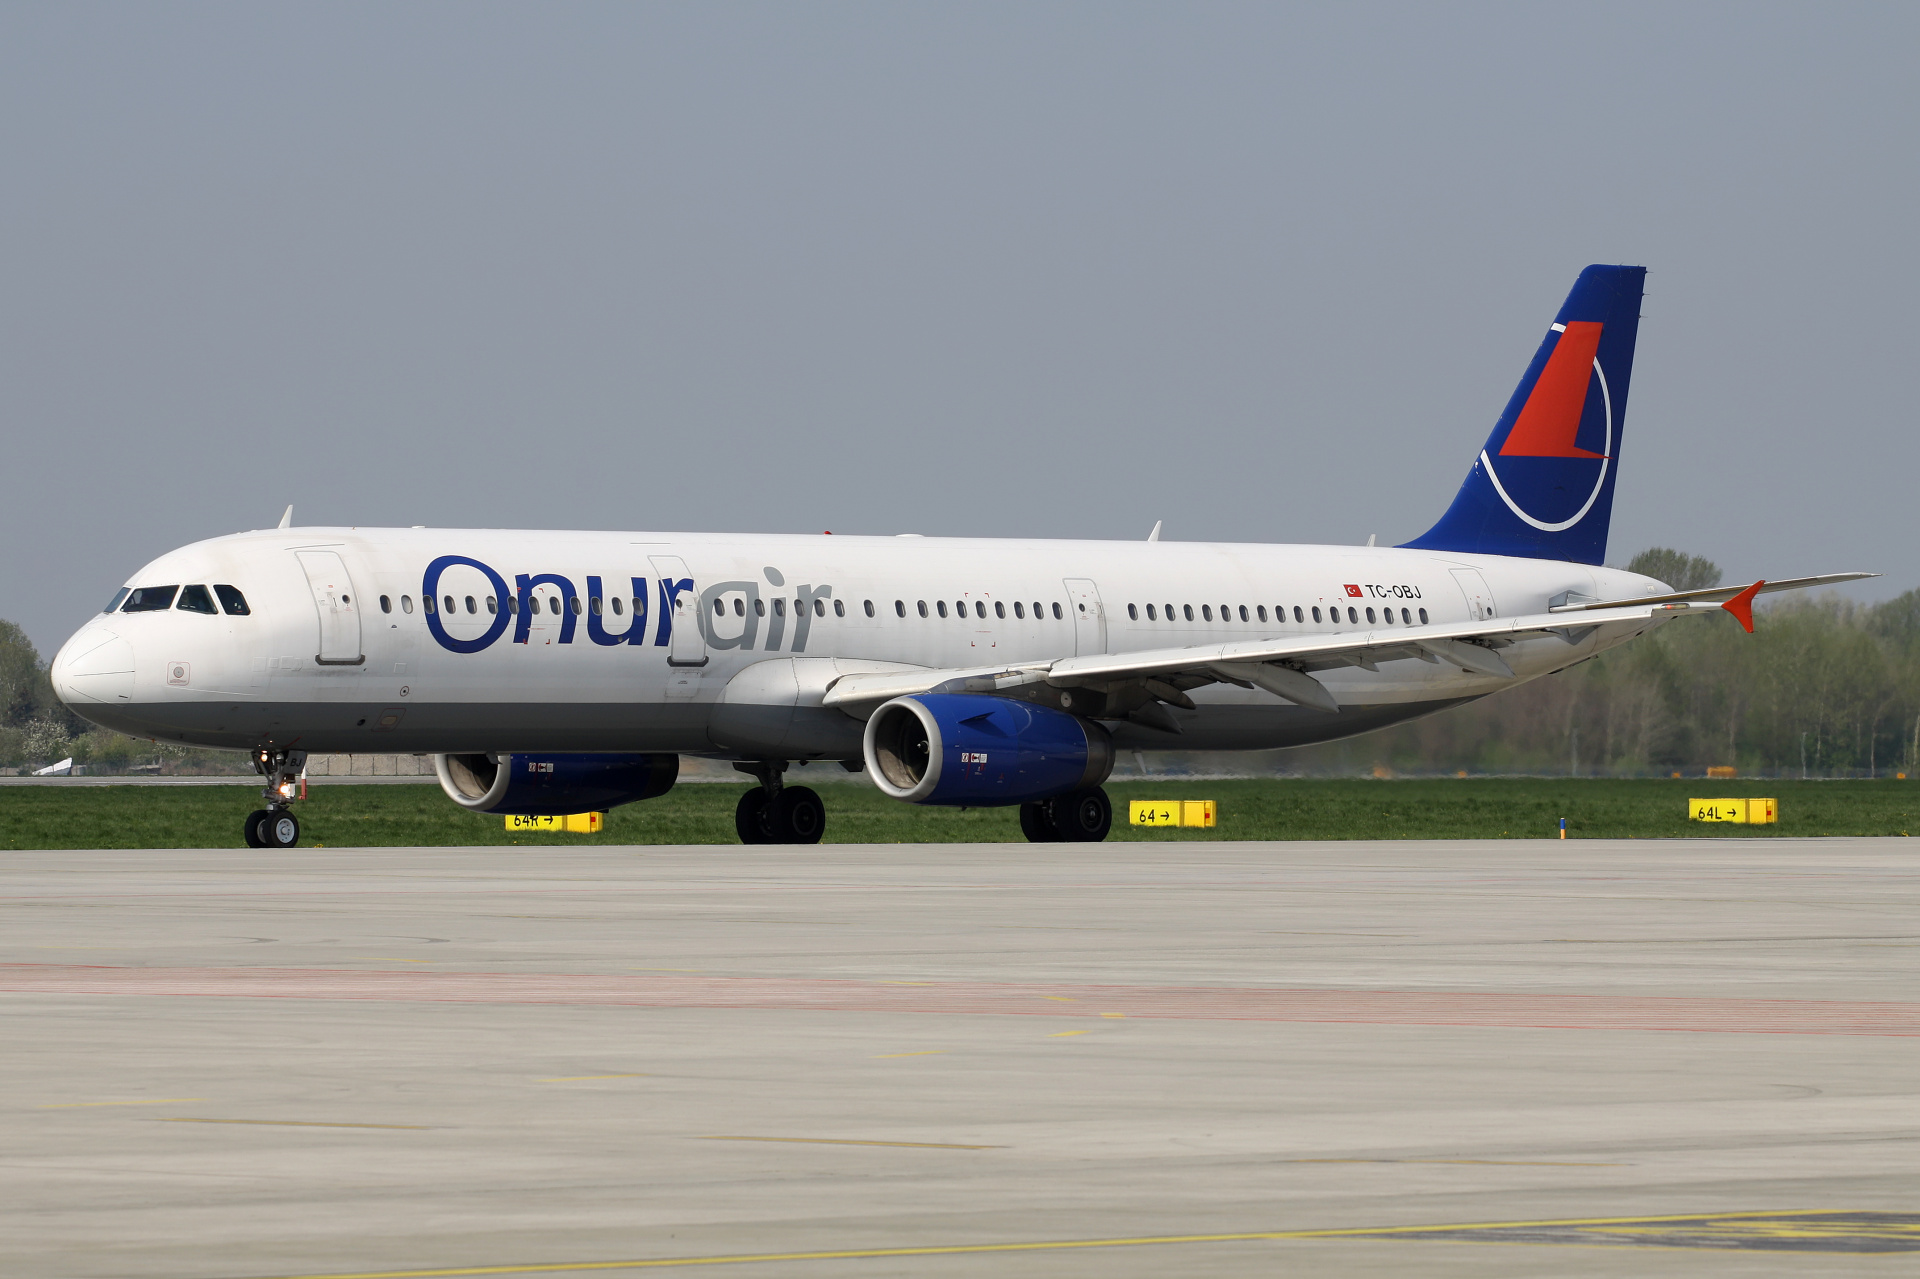 TC-OBJ, Onur Air (Aircraft » EPWA Spotting » Airbus A321-200)